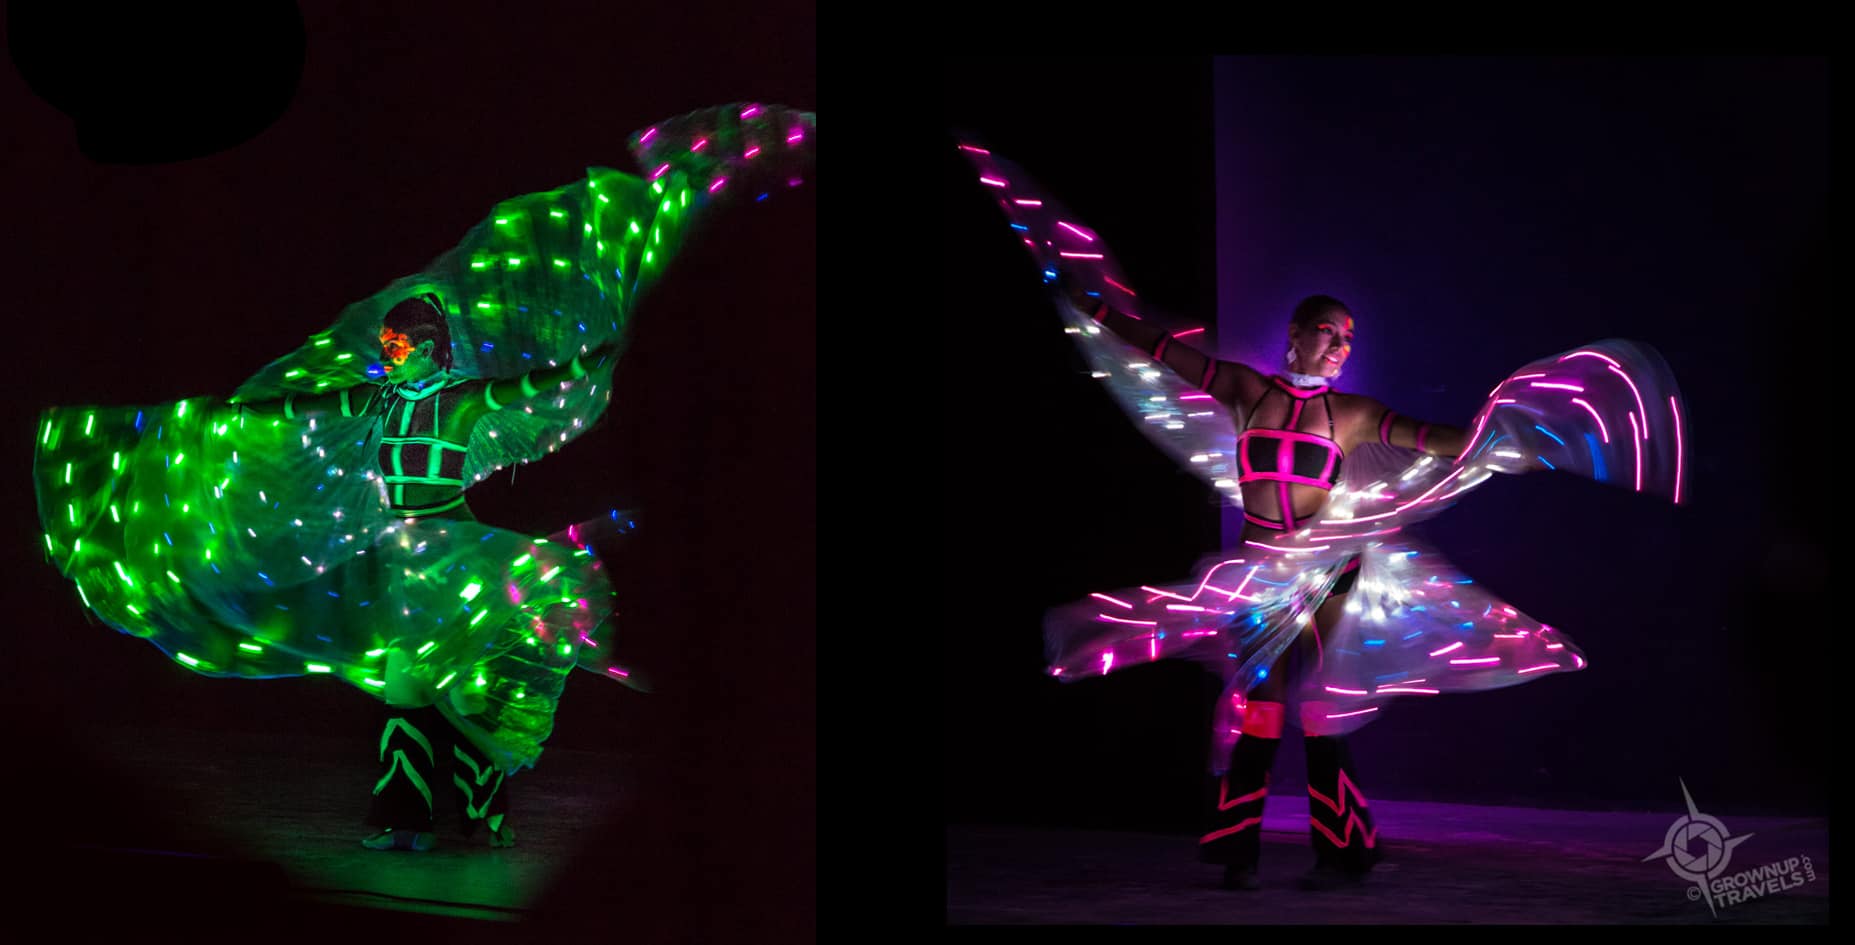 Illuminated dancers Grand oasis tulum